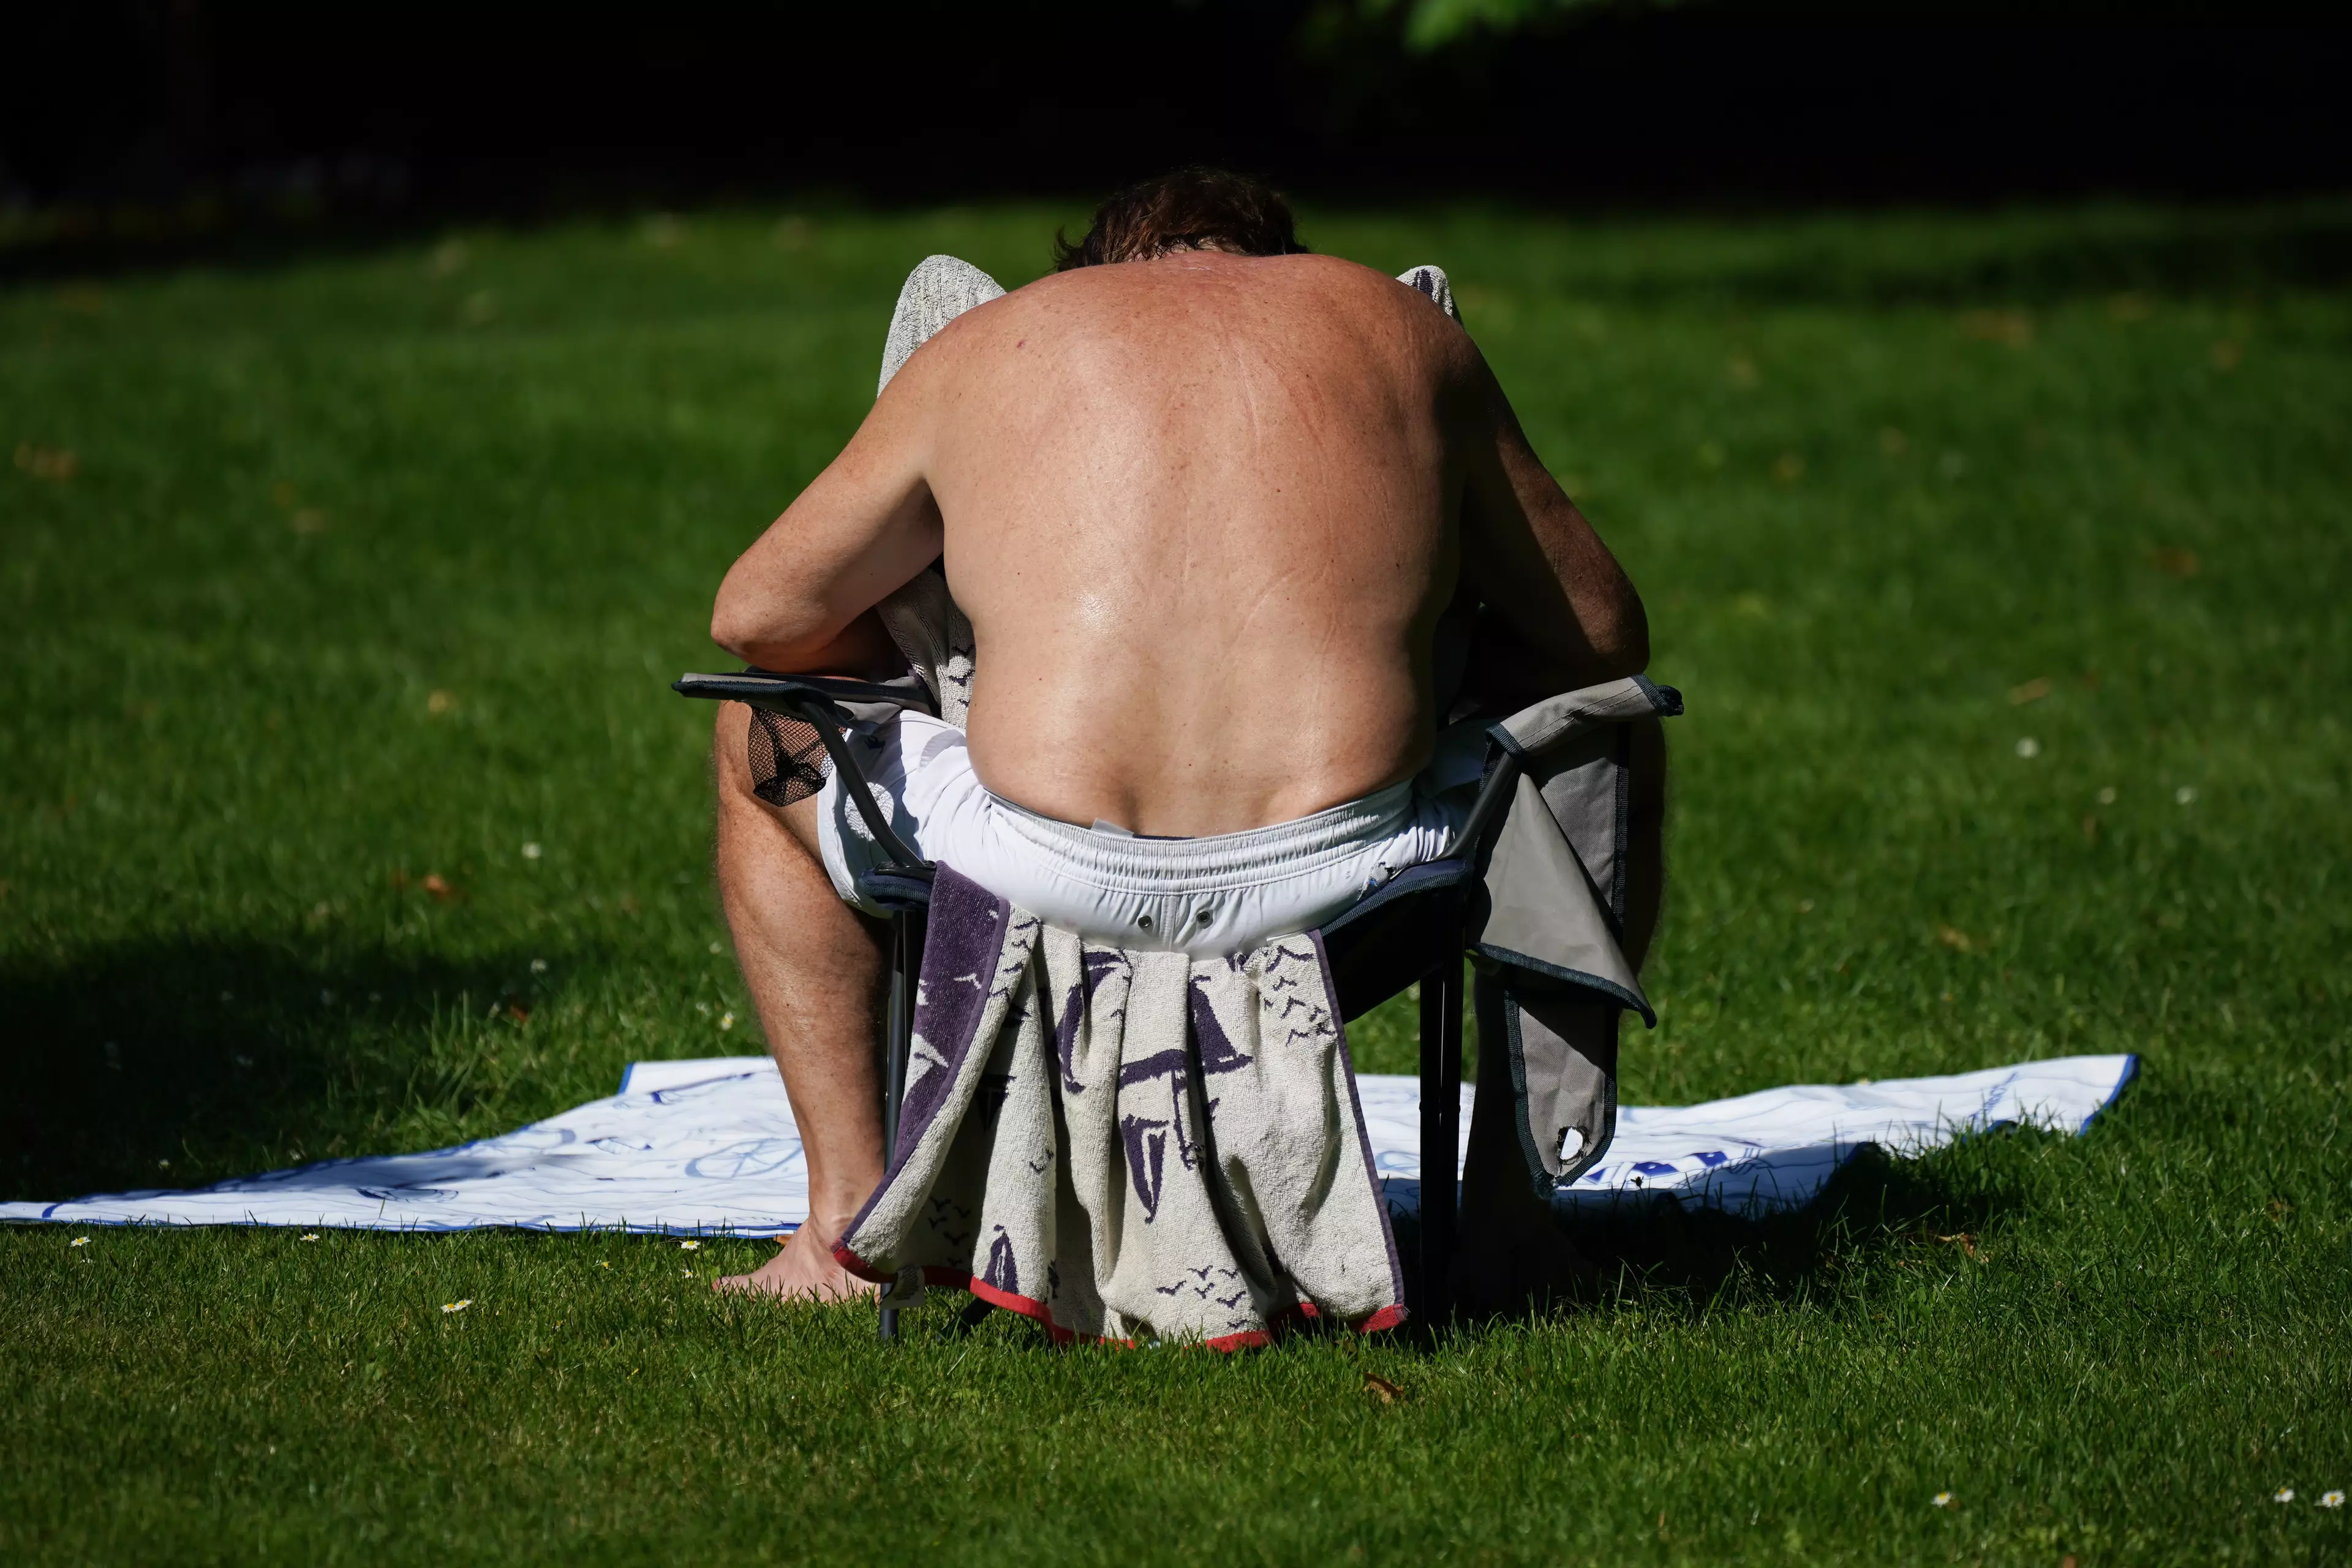 A man sunbathing in St James' Park, London.